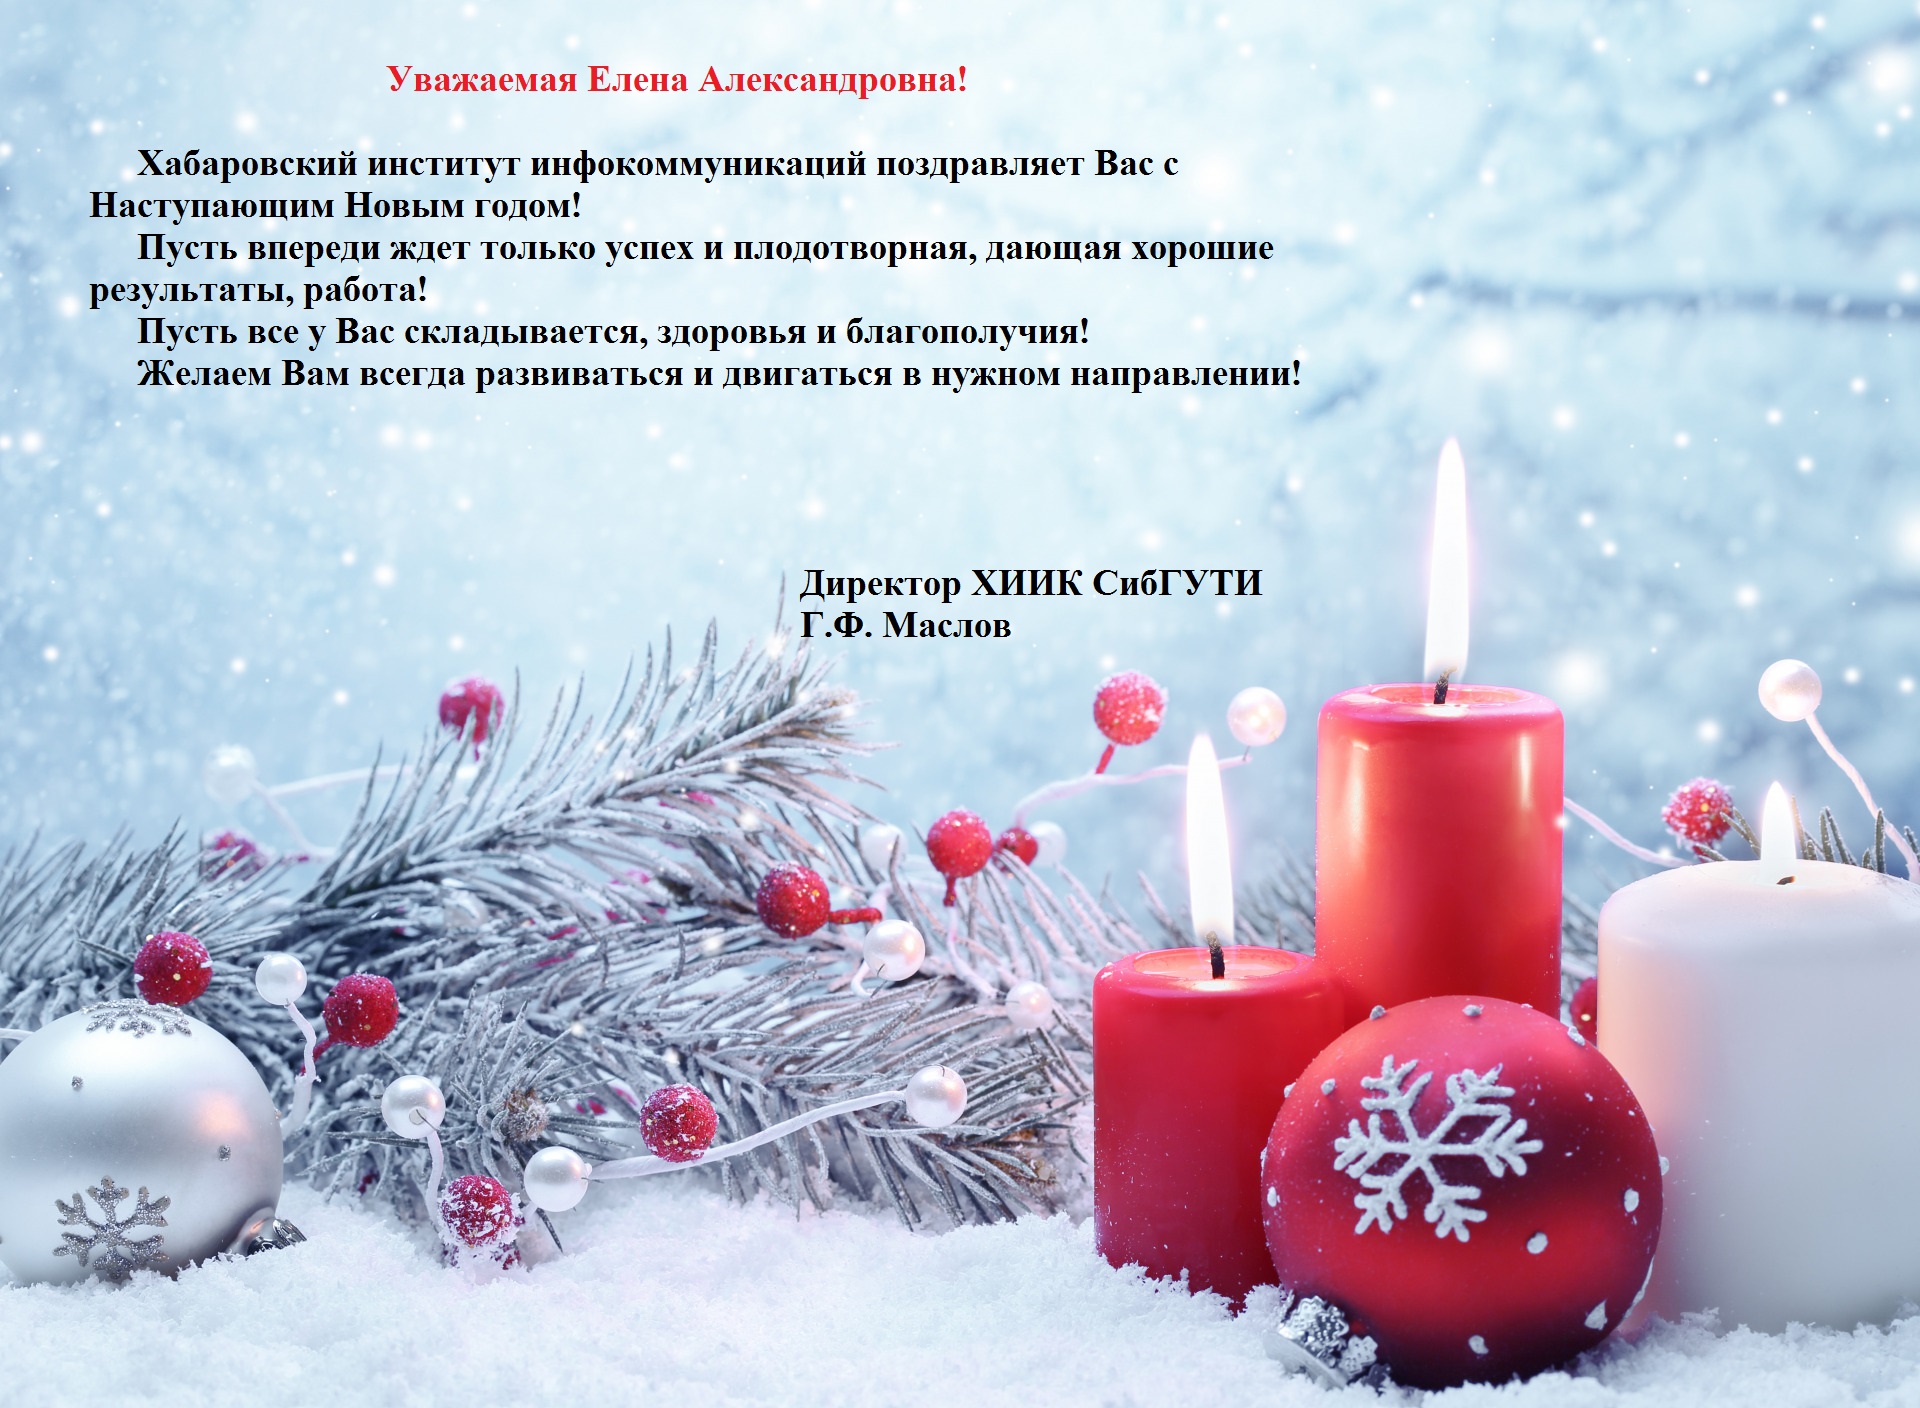 Поздравление с Новым годом от ХИИК СибГУТИ